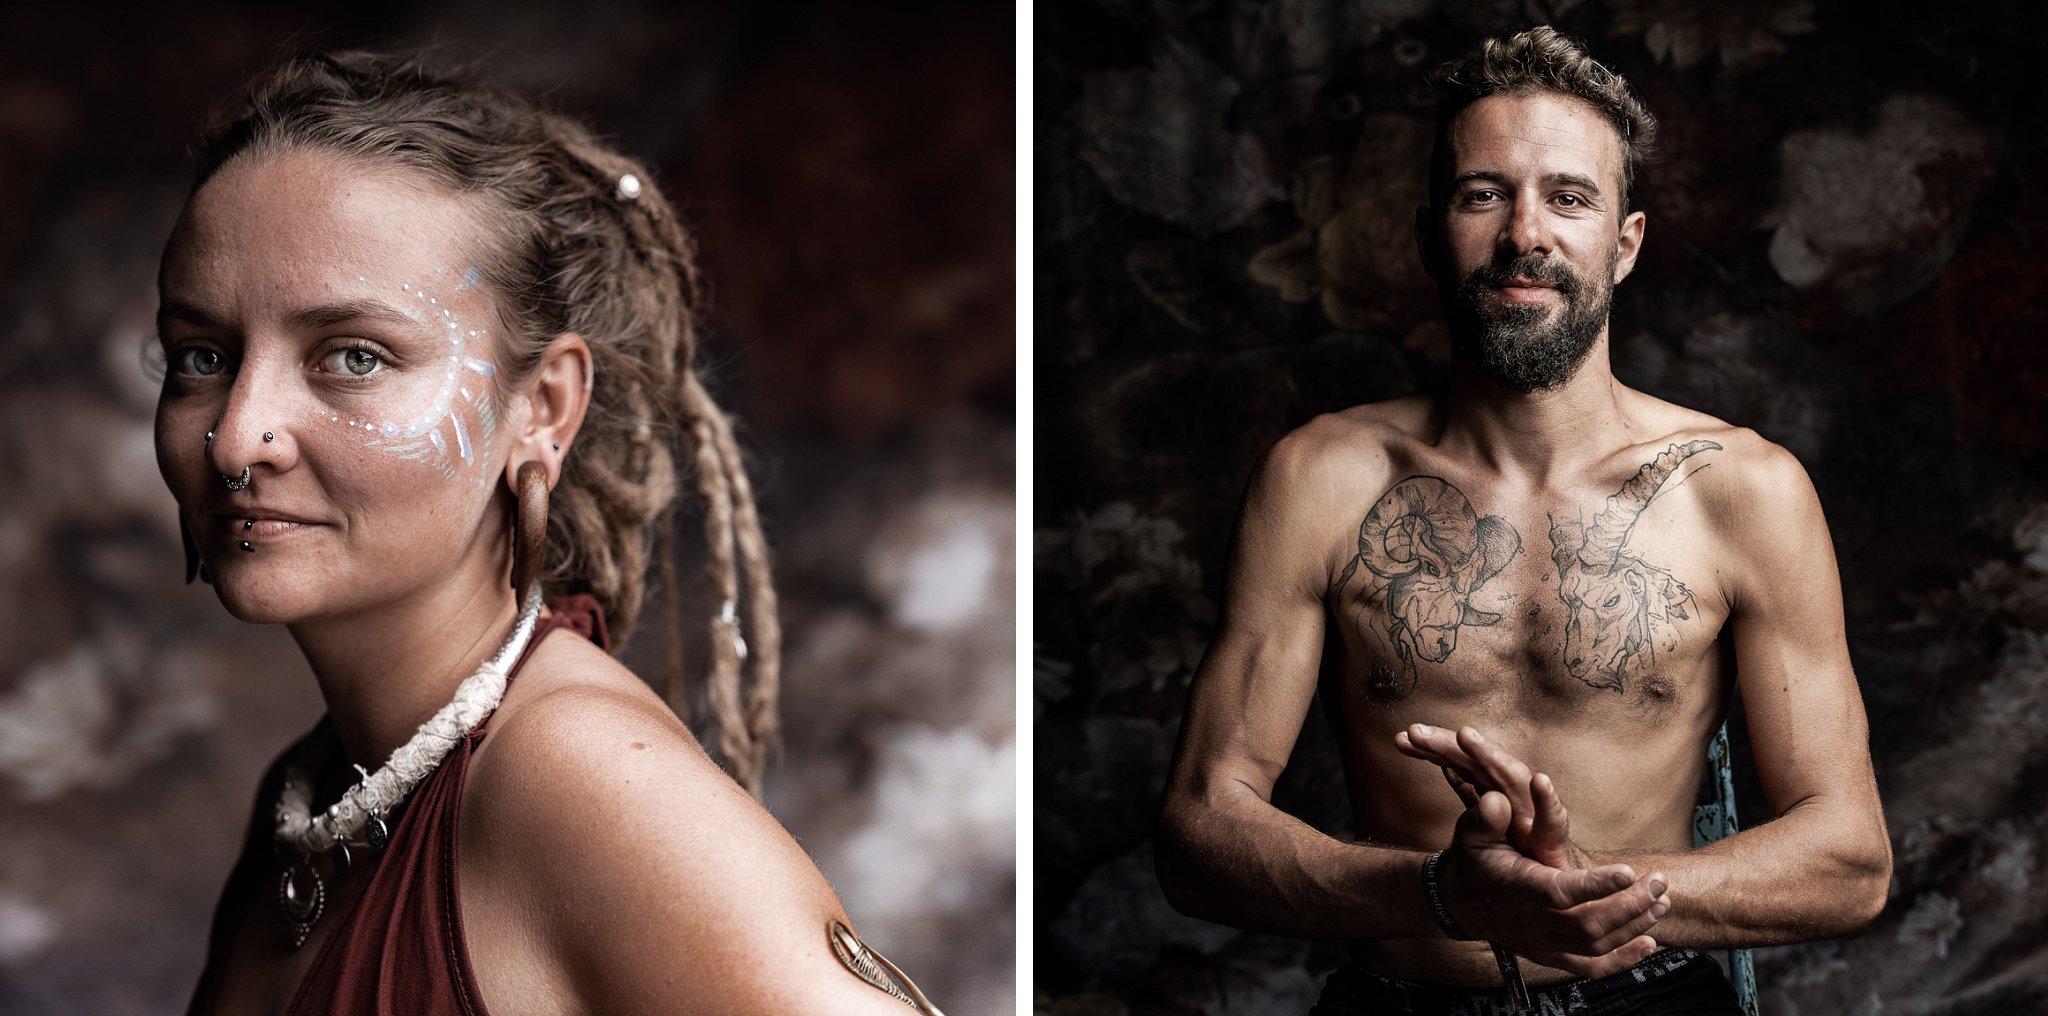 portraits de festivaliers- deux portraits en couleur d'une jeune feemme et d'un homme tous les deux tatoués